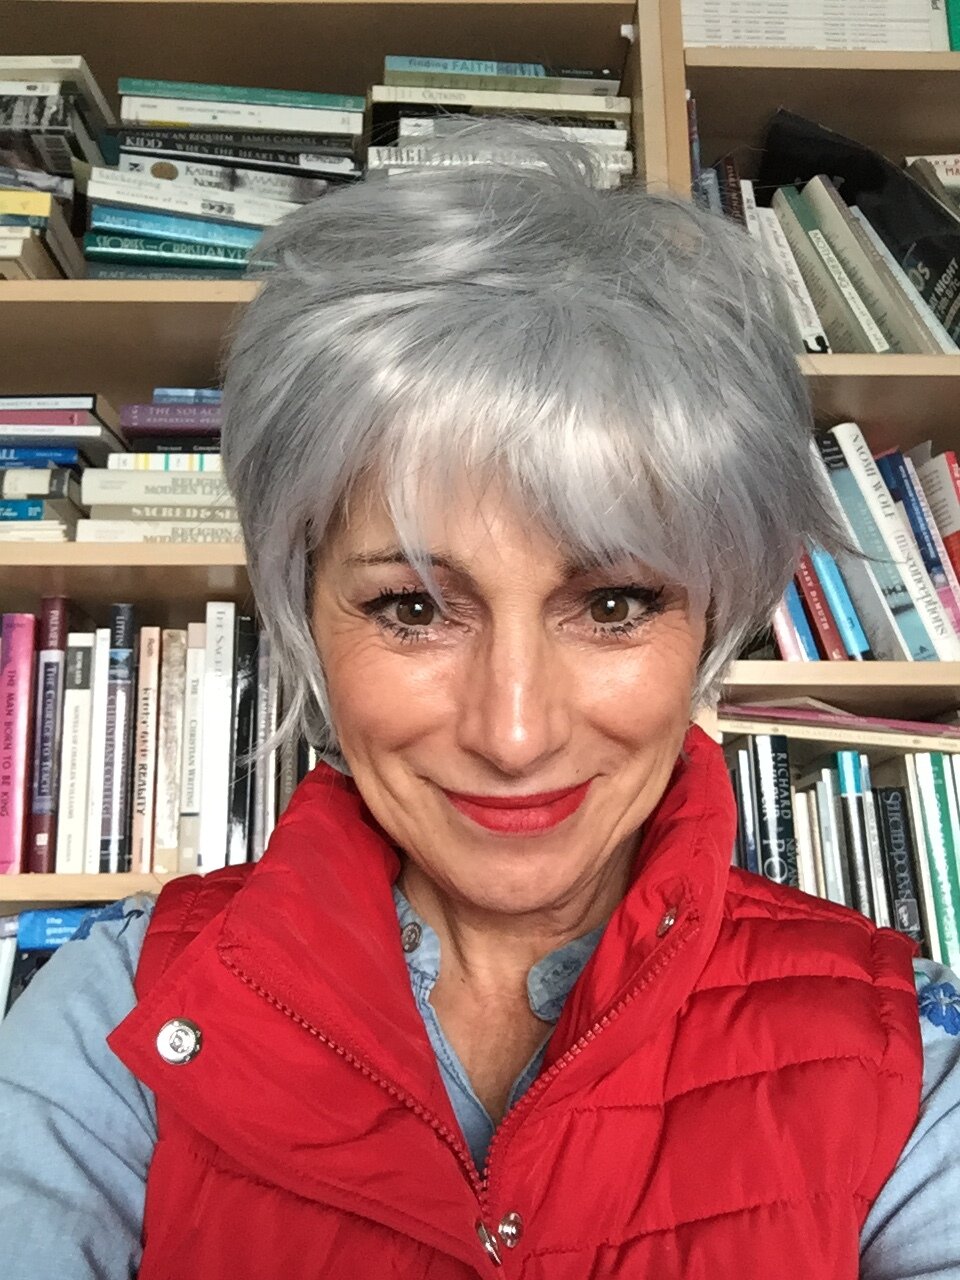 Leslie grey hair wig--smiling.JPG